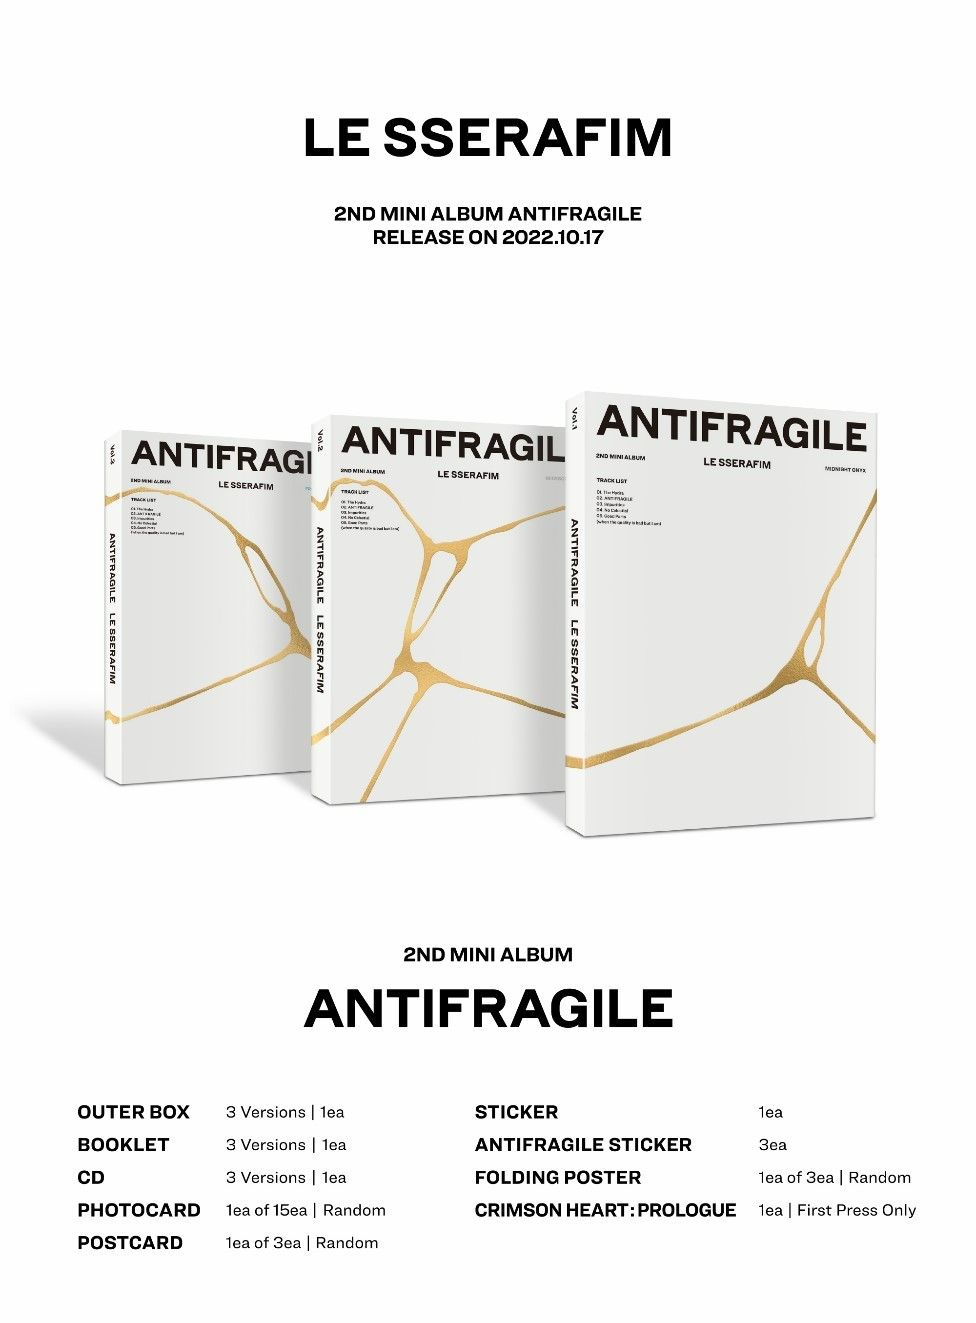 Lesserafim Antifragile. Lesserafim Antifragile album. Antifragile le Serafim обложка. Le Serafim Antifragile альбом. Lesserafim easy